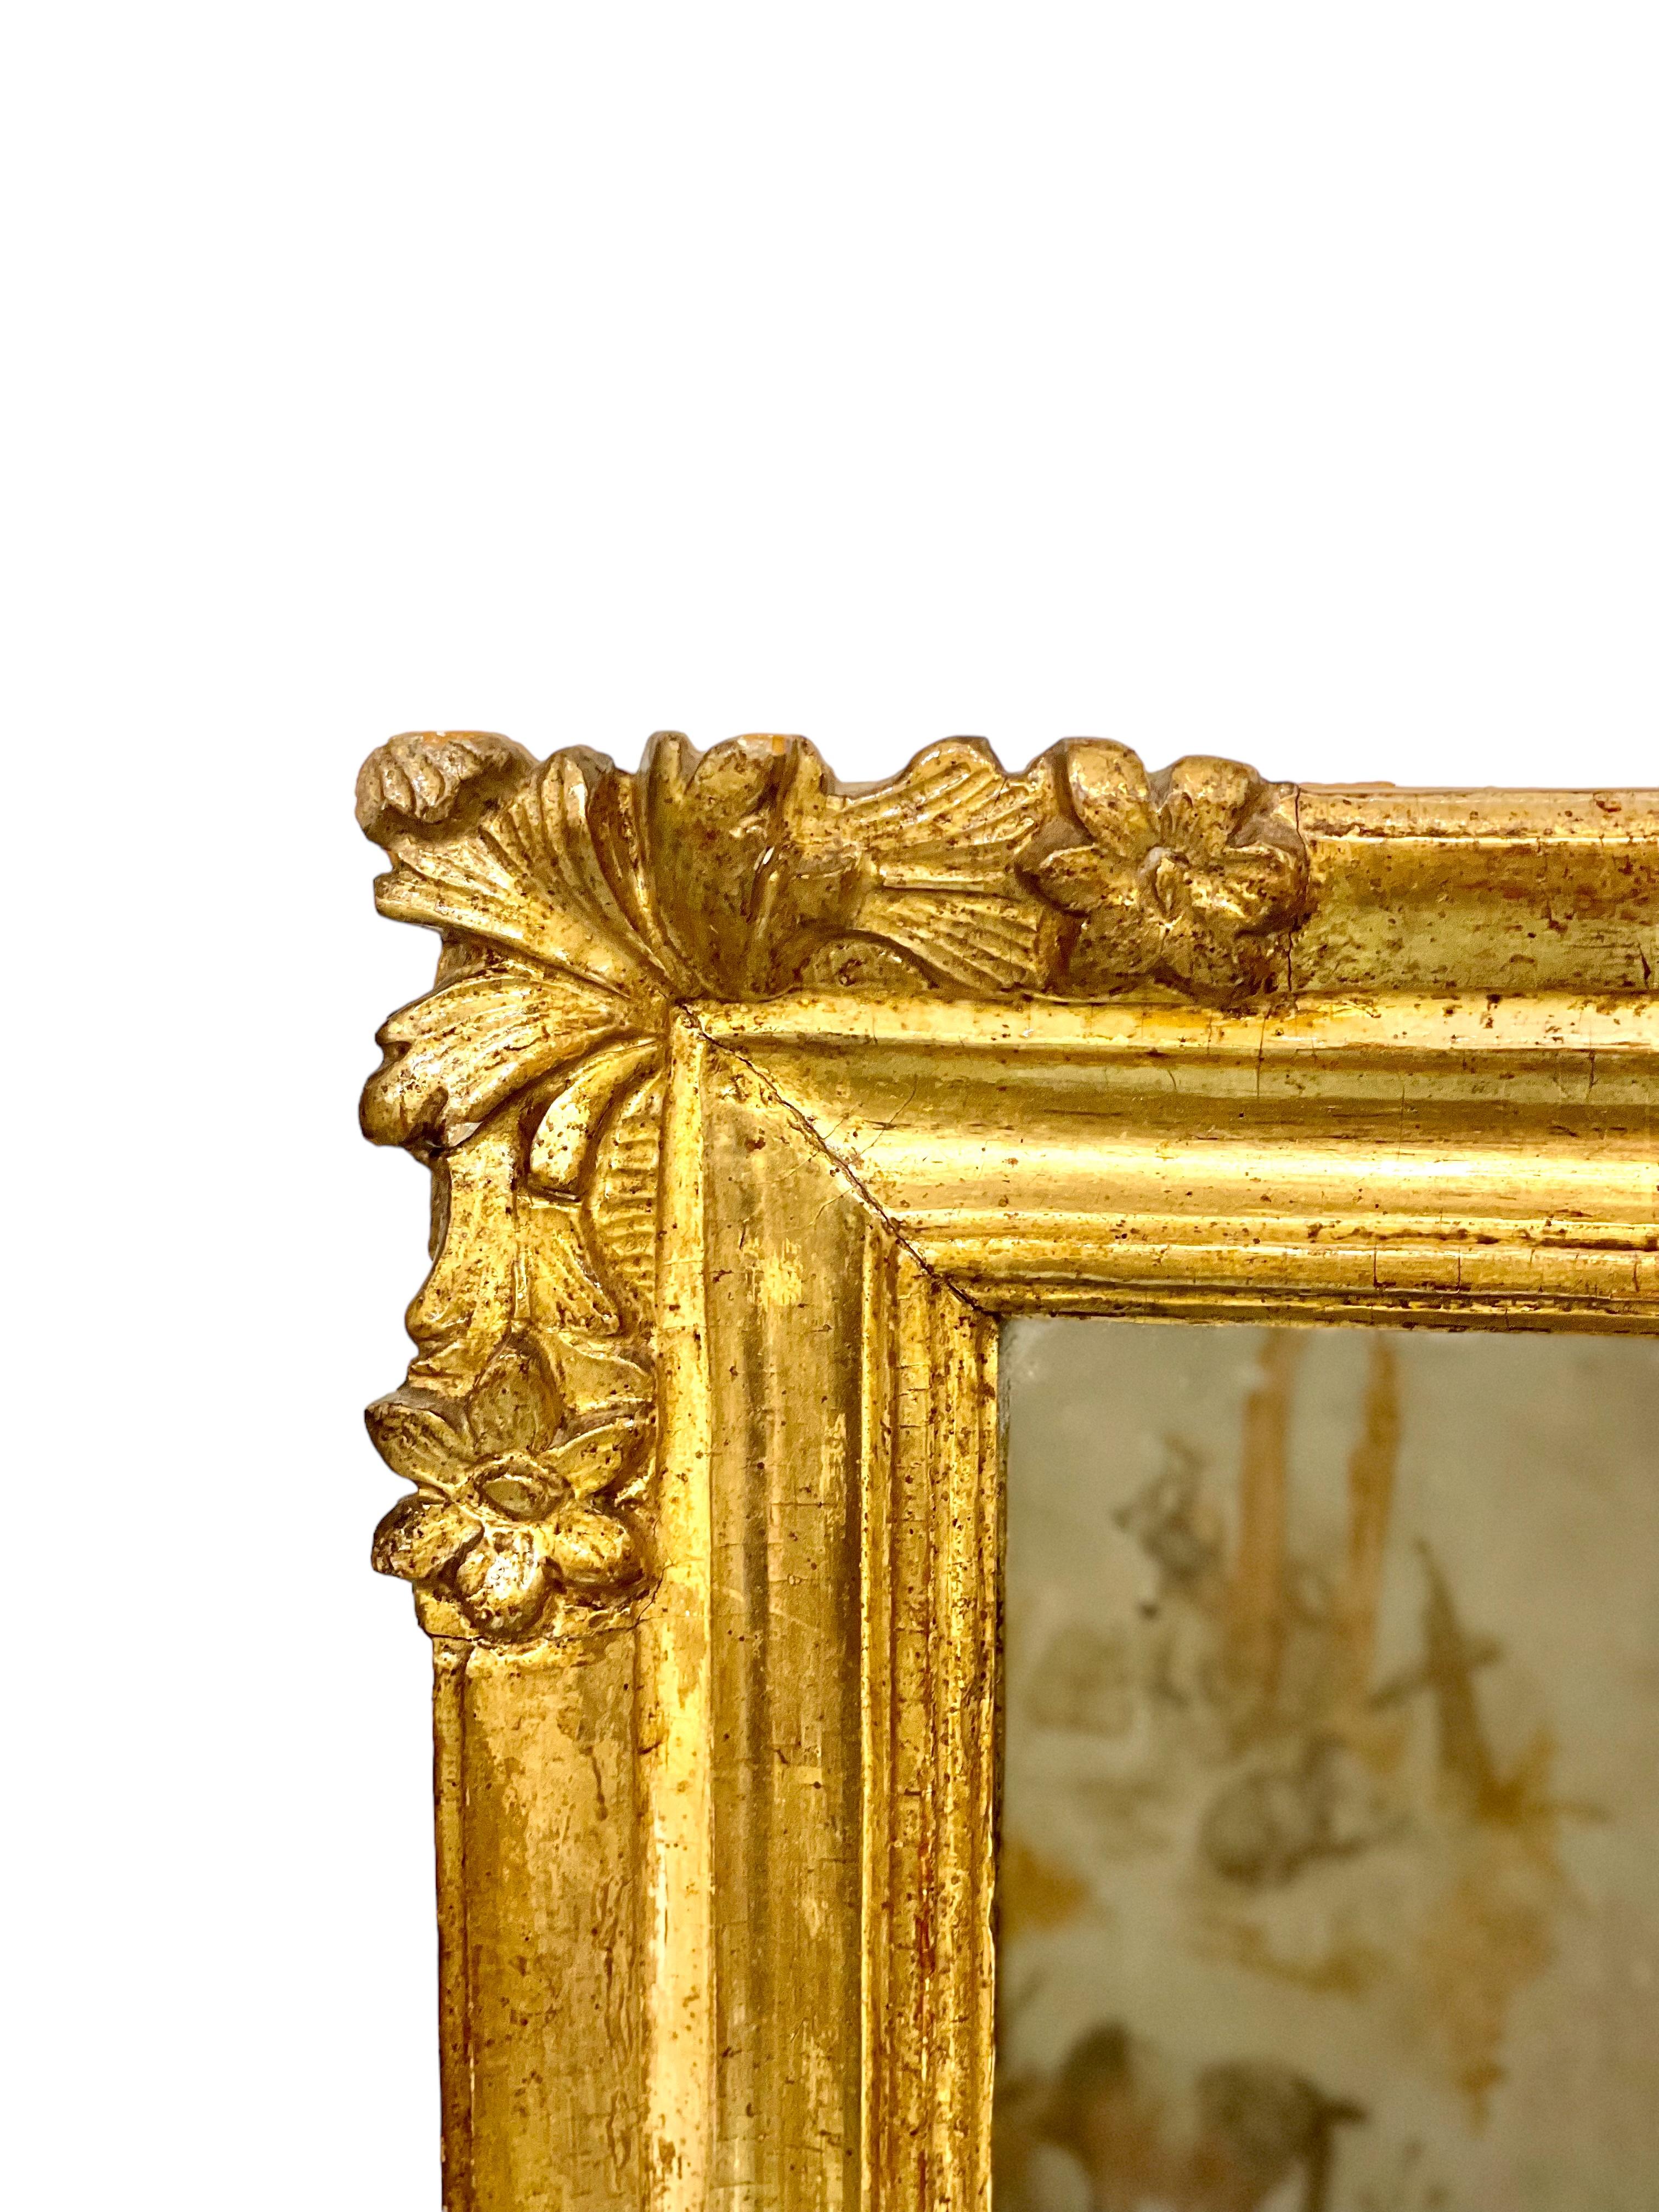 Joli petit miroir rectangulaire en bois sculpté et doré, dont les quatre coins sont ornés de sculptures de petites fleurs et de gerbes d'acanthe. Datant du XIXe siècle, ce charmant miroir a conservé sa plaque de verre d'origine et porte une